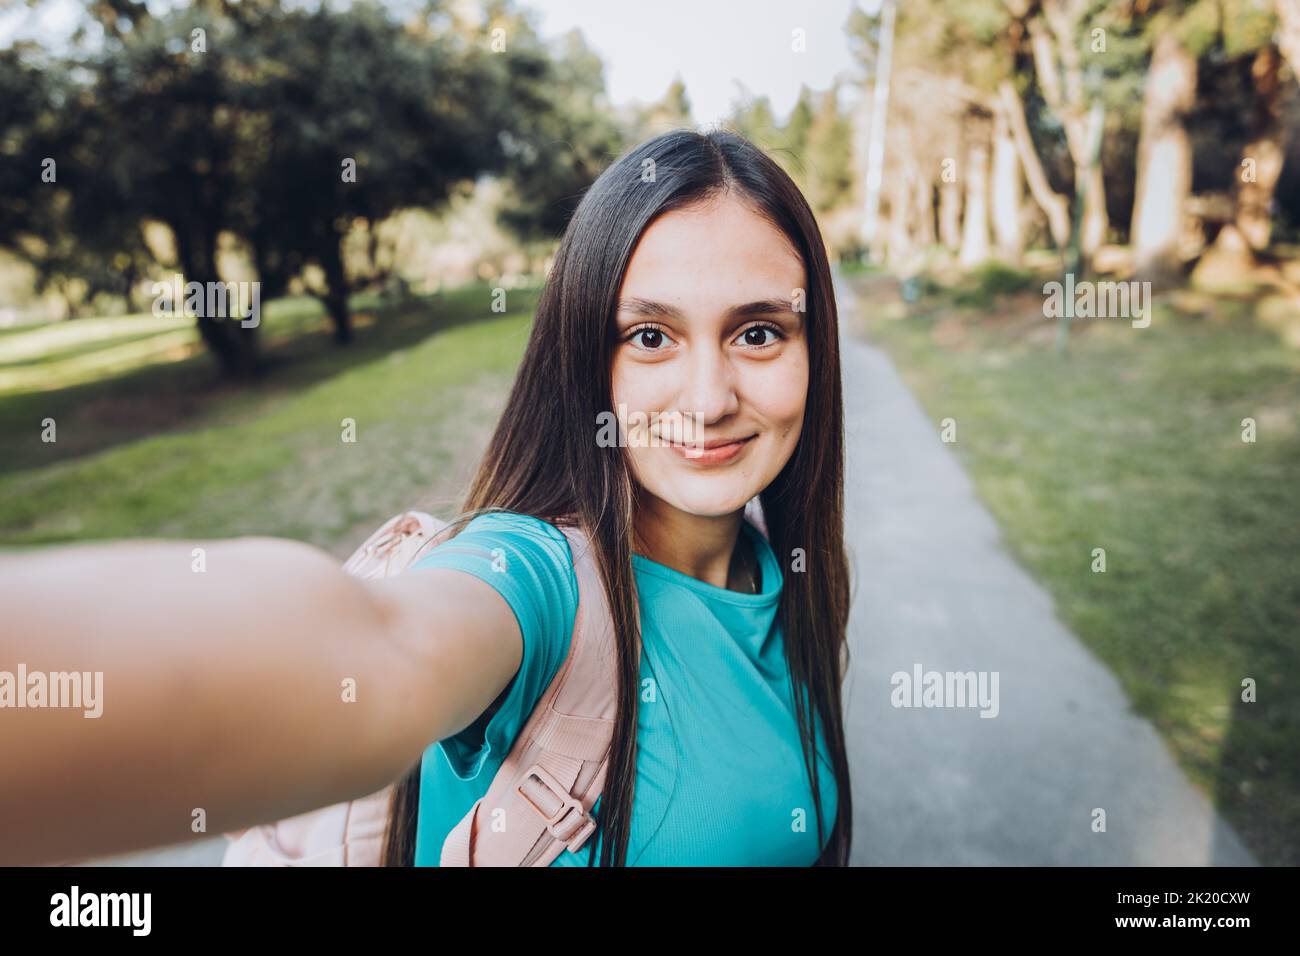 Lächelndes junges Mädchen mit türkisfarbenem T-Shirt und Kopfhörern, das mit ihrem Handy ein POV-Selfie an einem natürlichen Ort macht Stockfoto